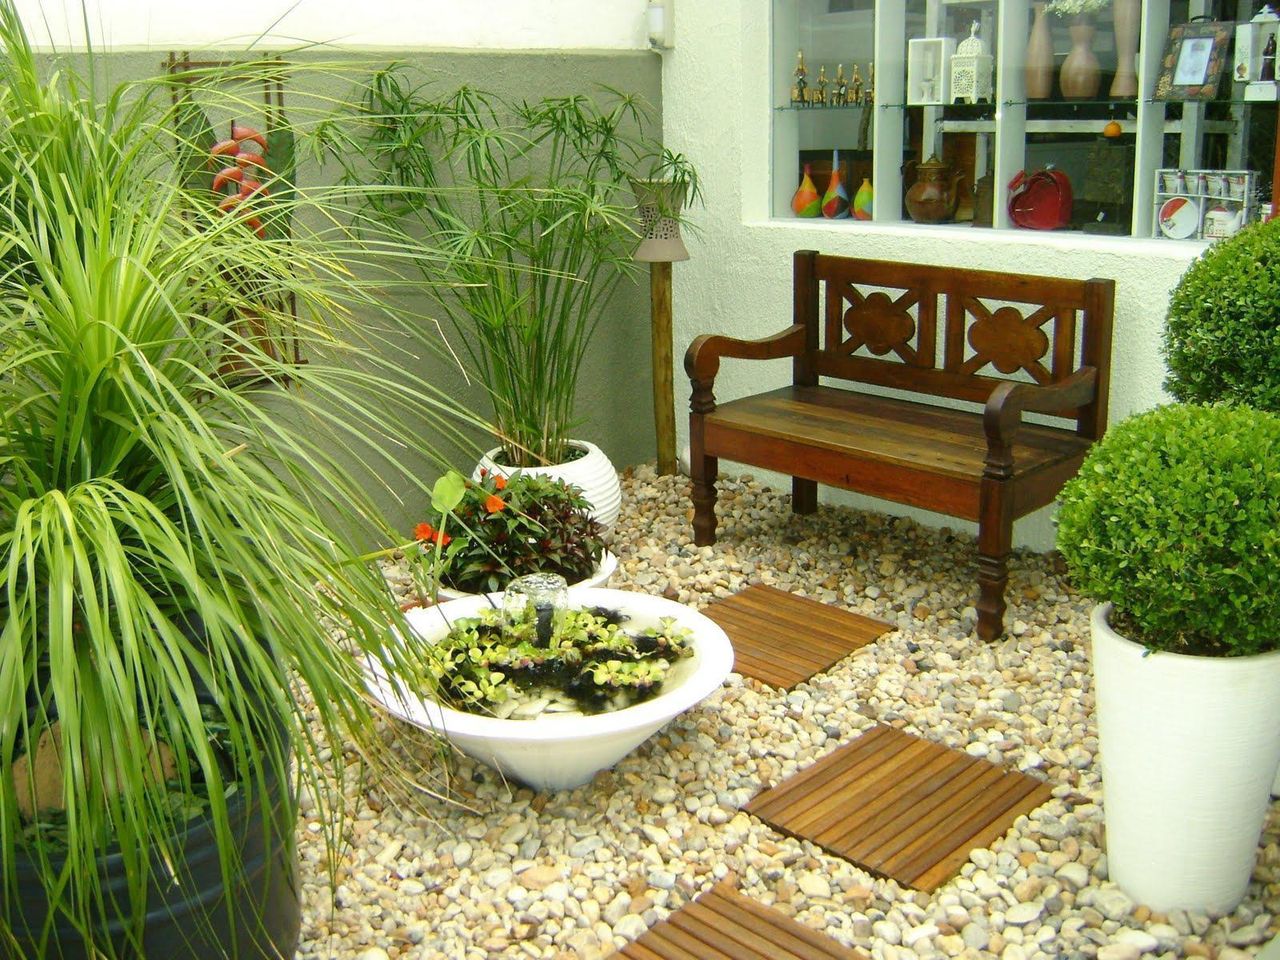 Jardim moderno interno com área para sentar.